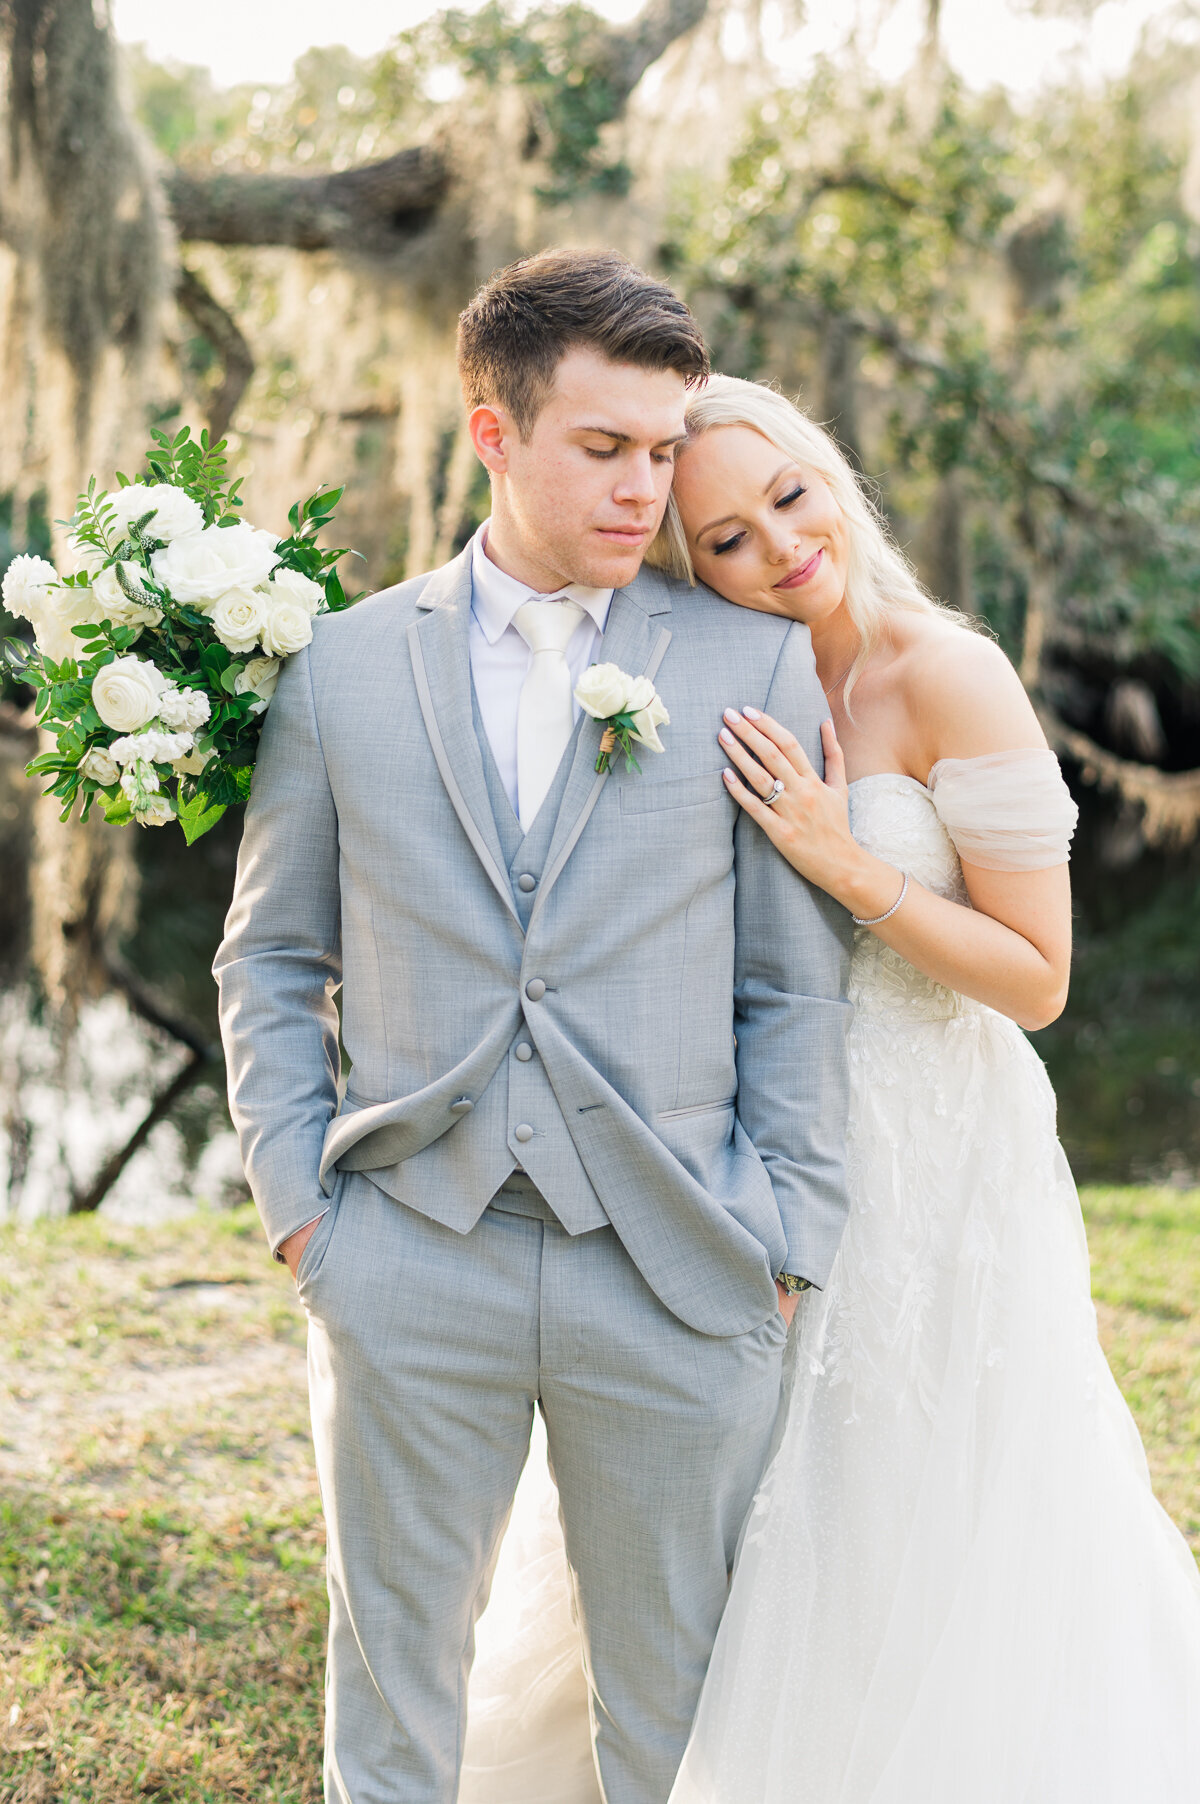 Sarah & Kevin | Up the Creek Farms Wedding | Lisa Marshall Photography-54